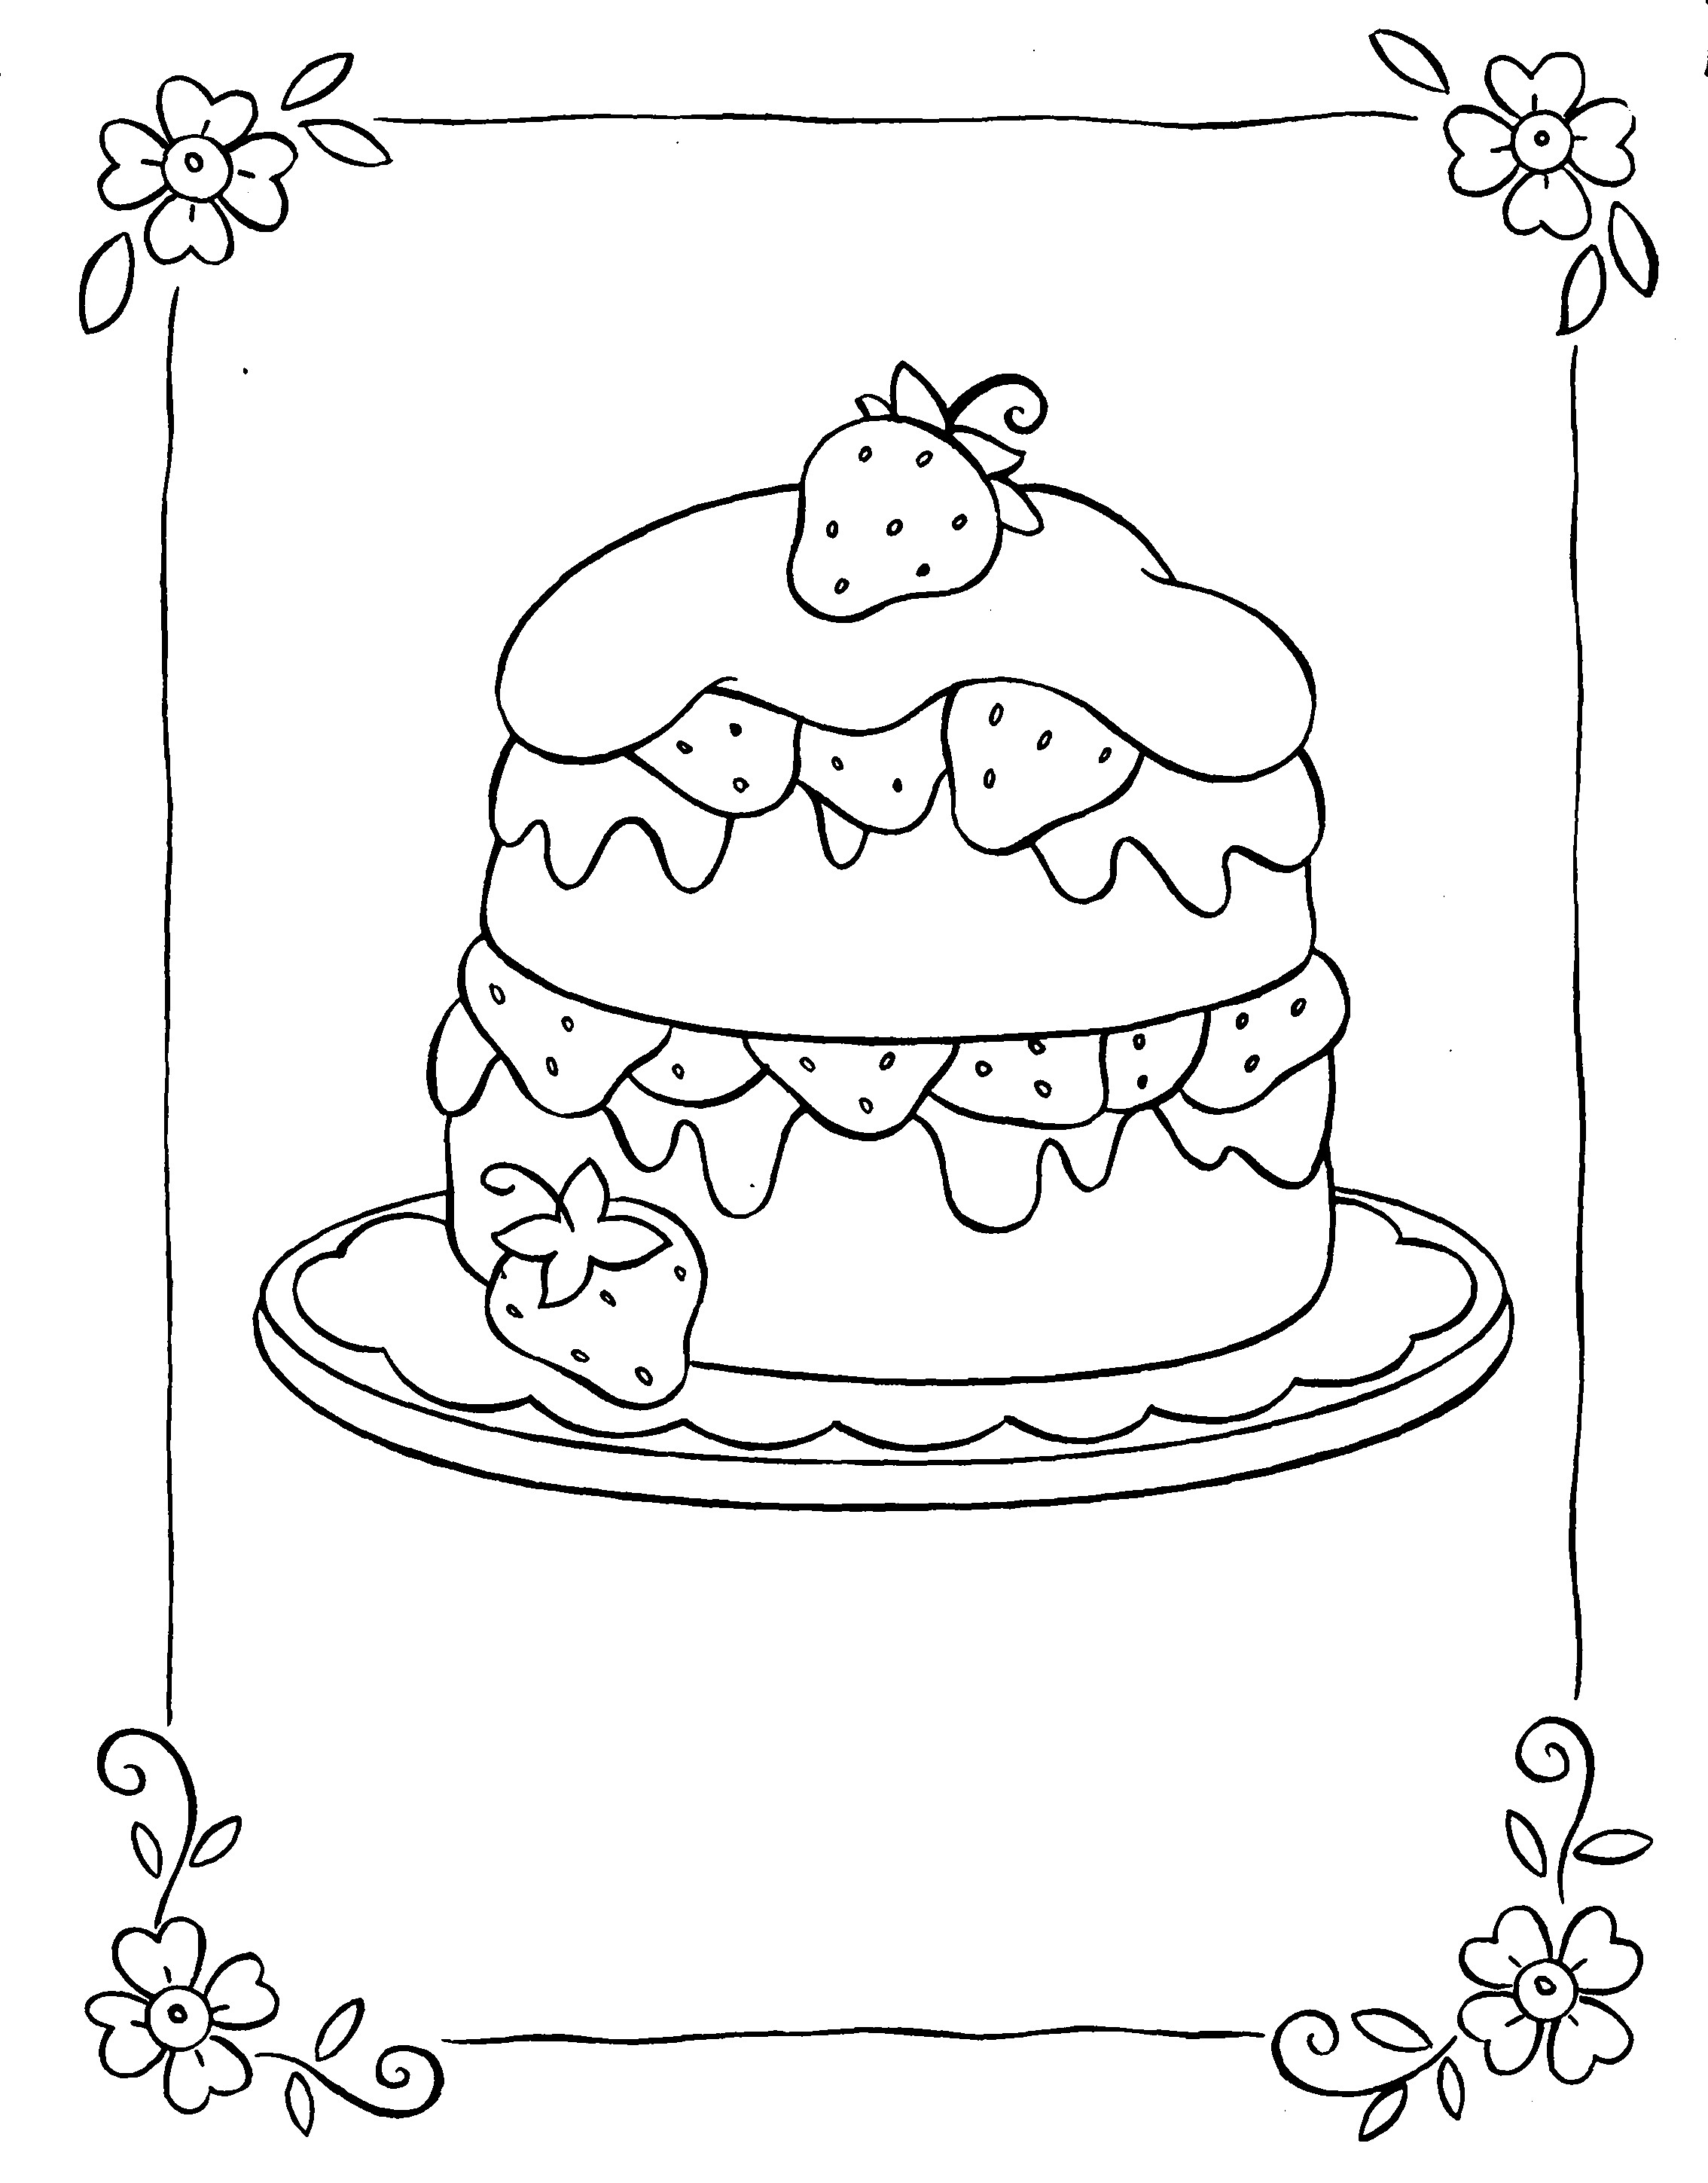 Ausmalbilder Kuchen
 Malvorlagen fur kinder Ausmalbilder Kuchen kostenlos